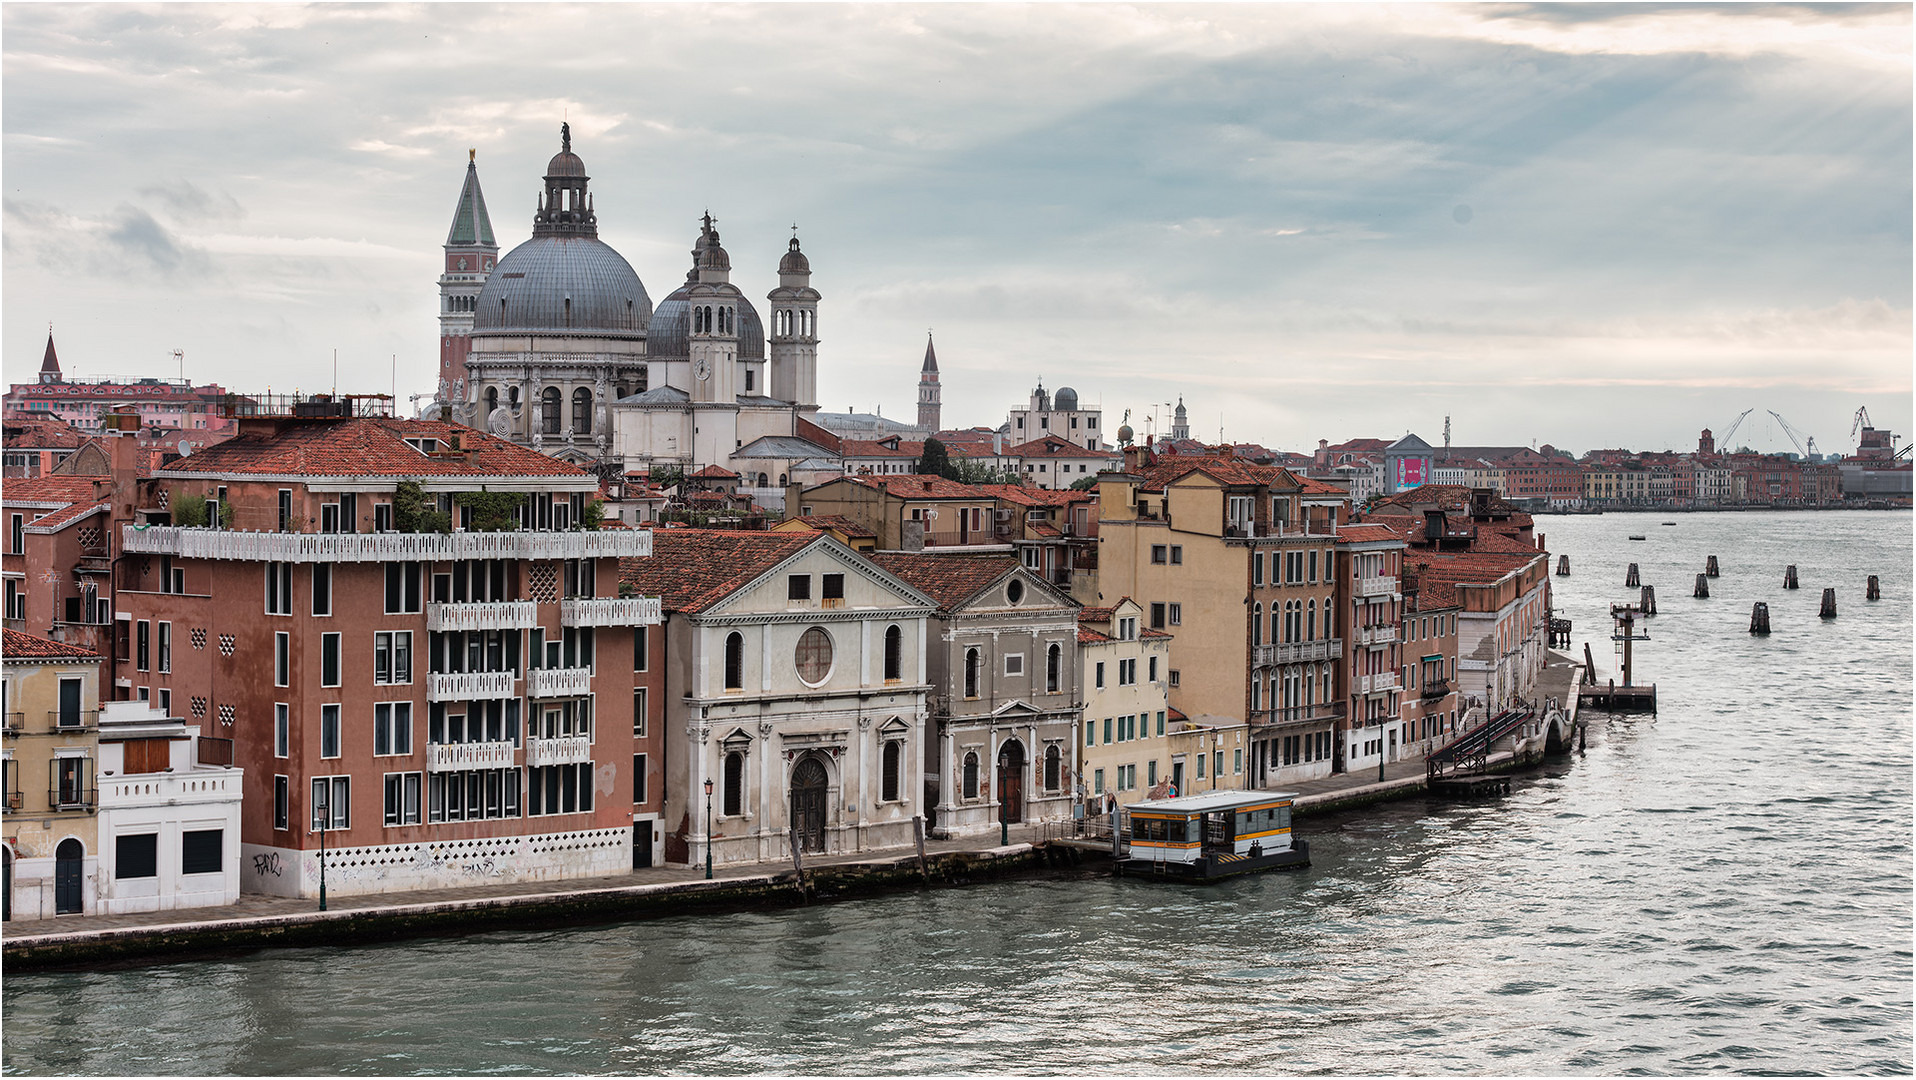 Impressionen aus Venedig